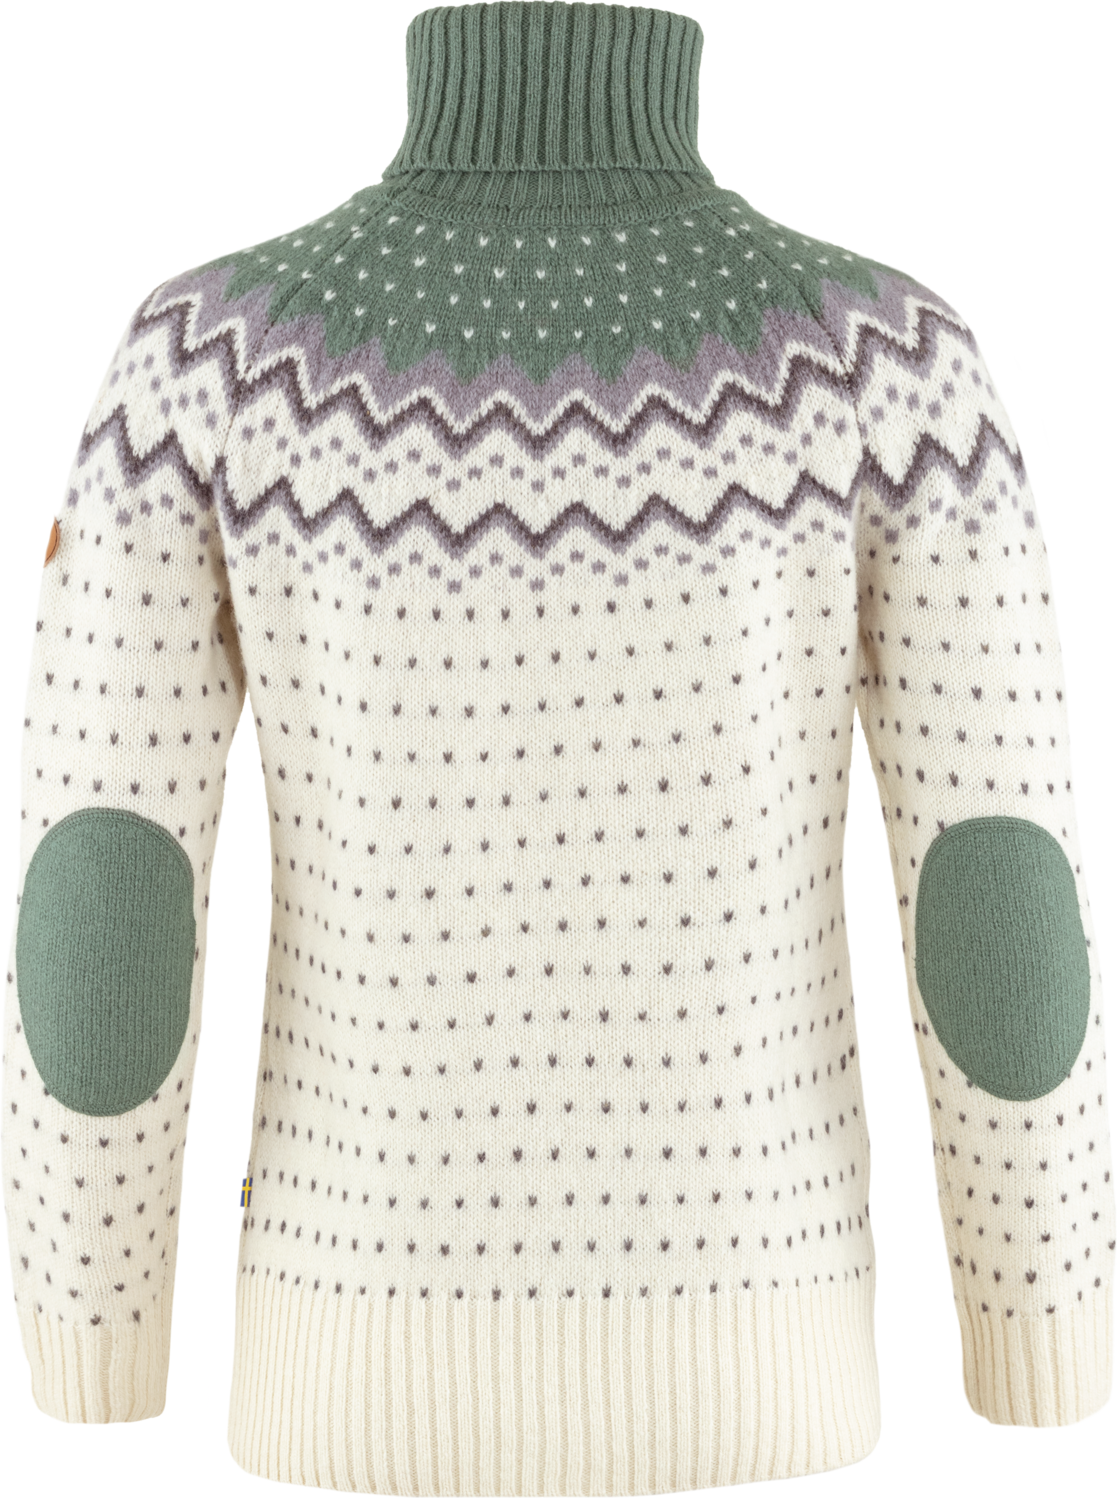 Women's Övik Knit Roller Neck Sweater - 100% Wool